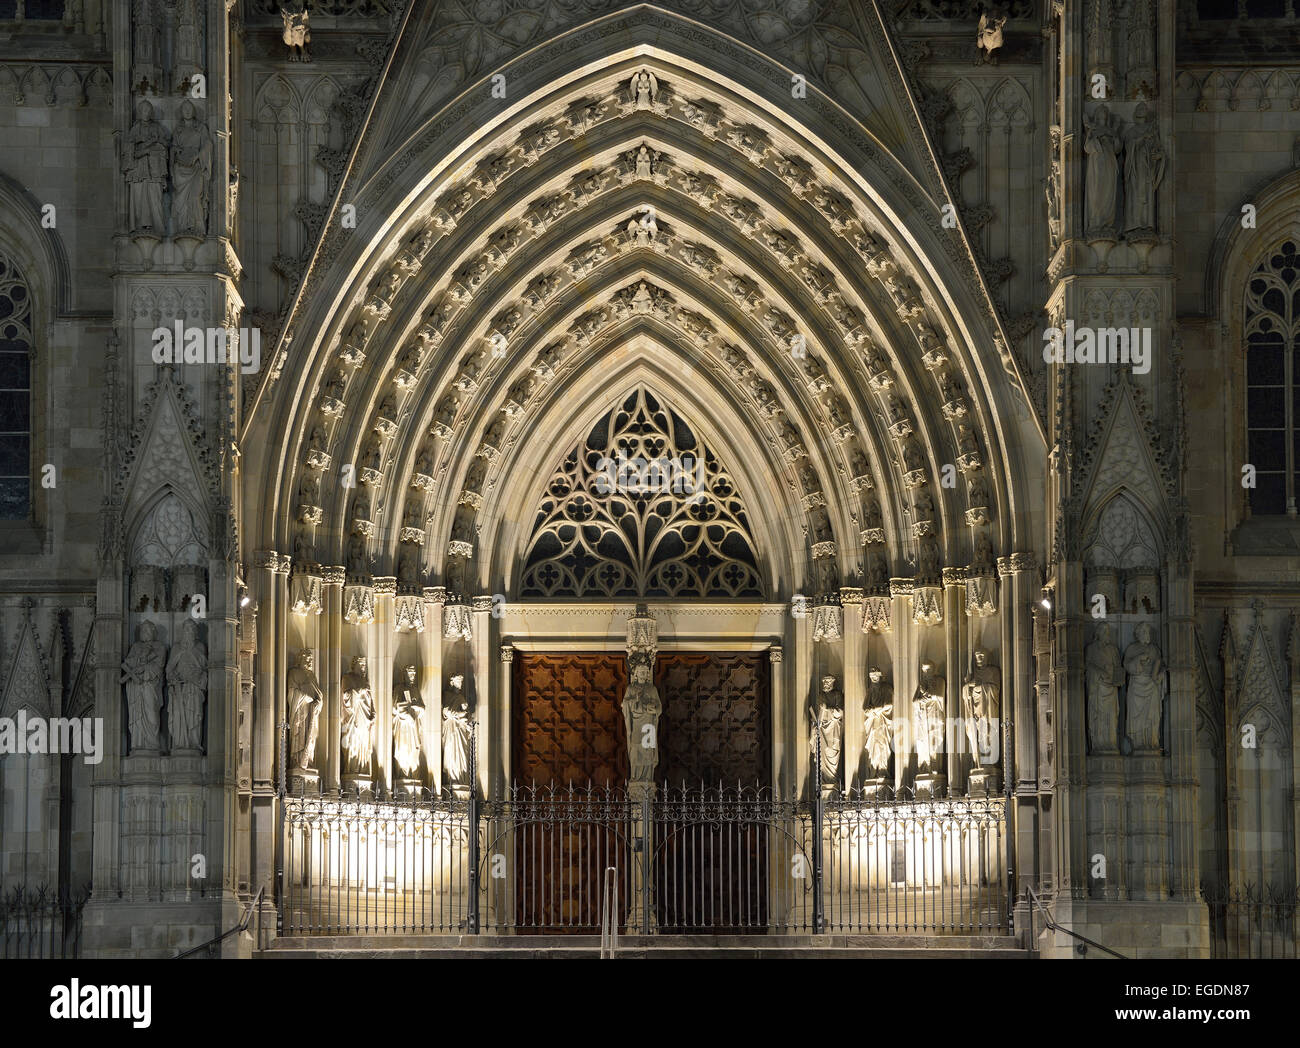 Illuminata portale della cattedrale di Barcellona di notte, La Catedral de la Santa Creu i Santa Eulalia, architettura gotica, Barri Gotic, Barcellona, in Catalogna, Spagna Foto Stock